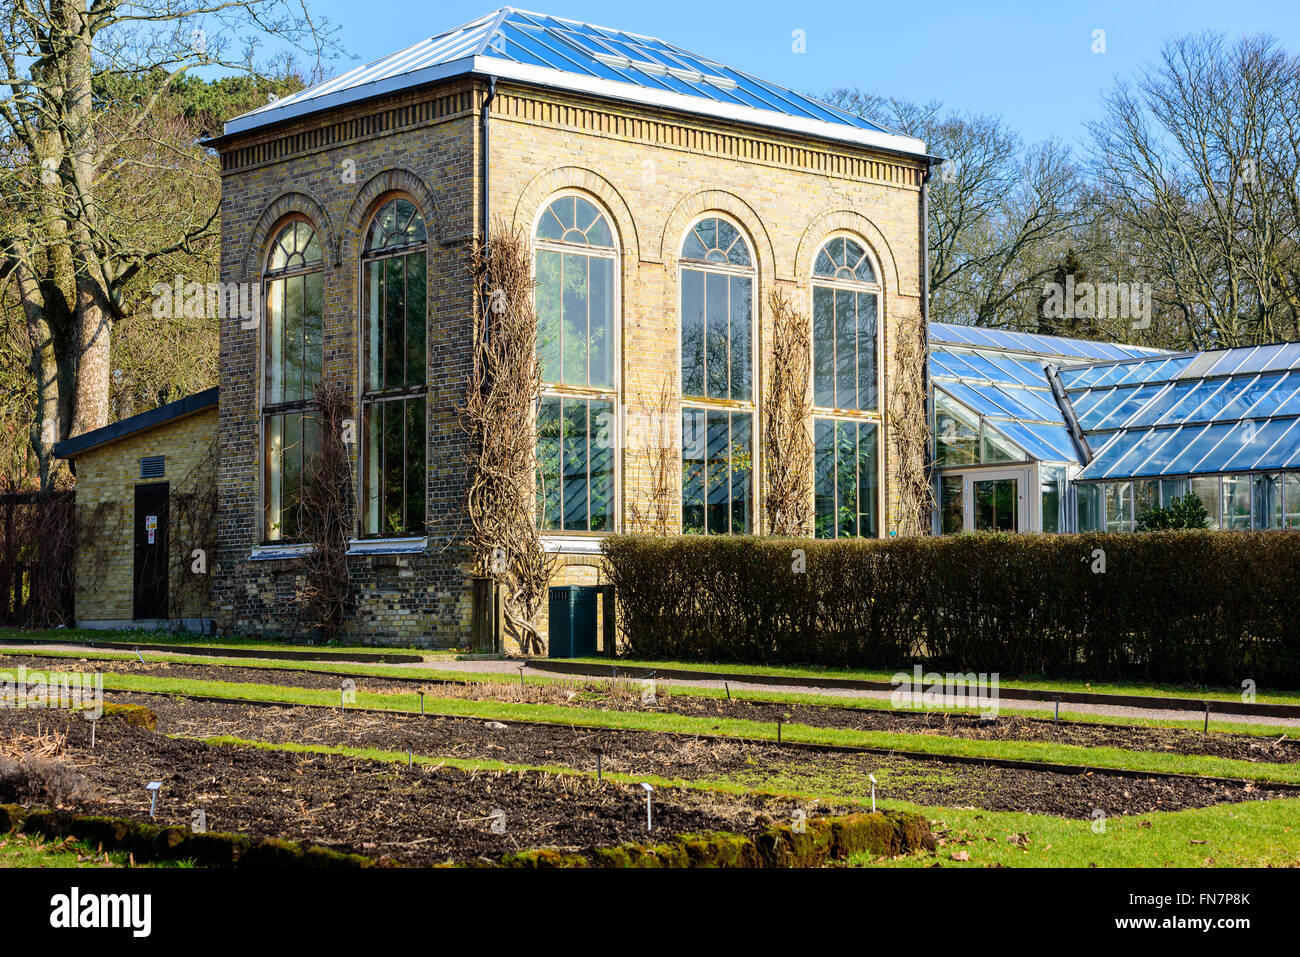 Lund, Schweden - 12. März 2016: Der Wintergarten oder in der Orangerie Gebäude an die öffentlich geöffnet Lund Universität Botanischer Garten. Fließen Stockfoto